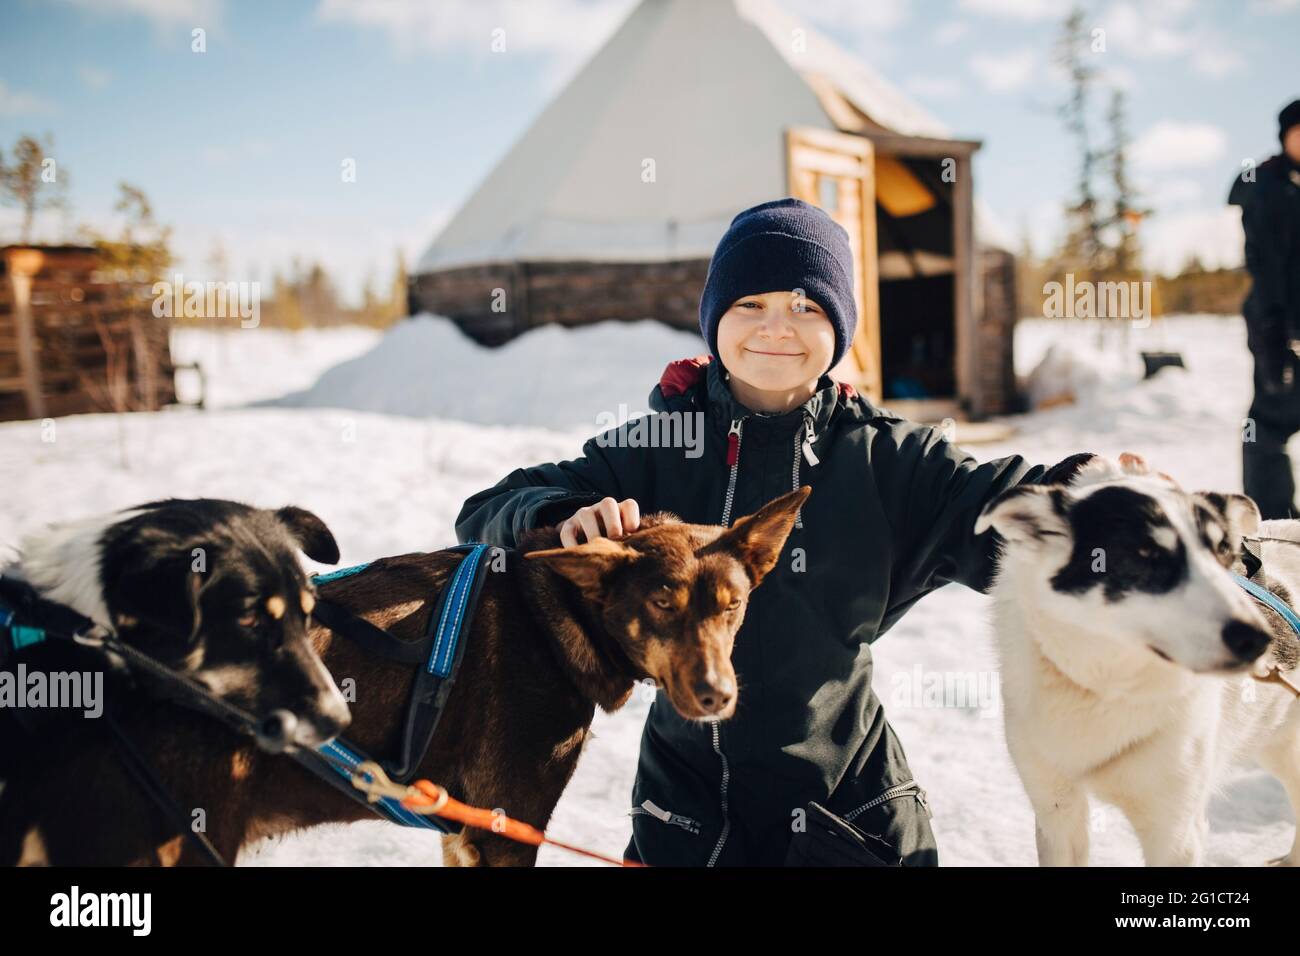 Retrato de niño usando sombrero de punto acariciando perros husky durante el invierno Foto de stock